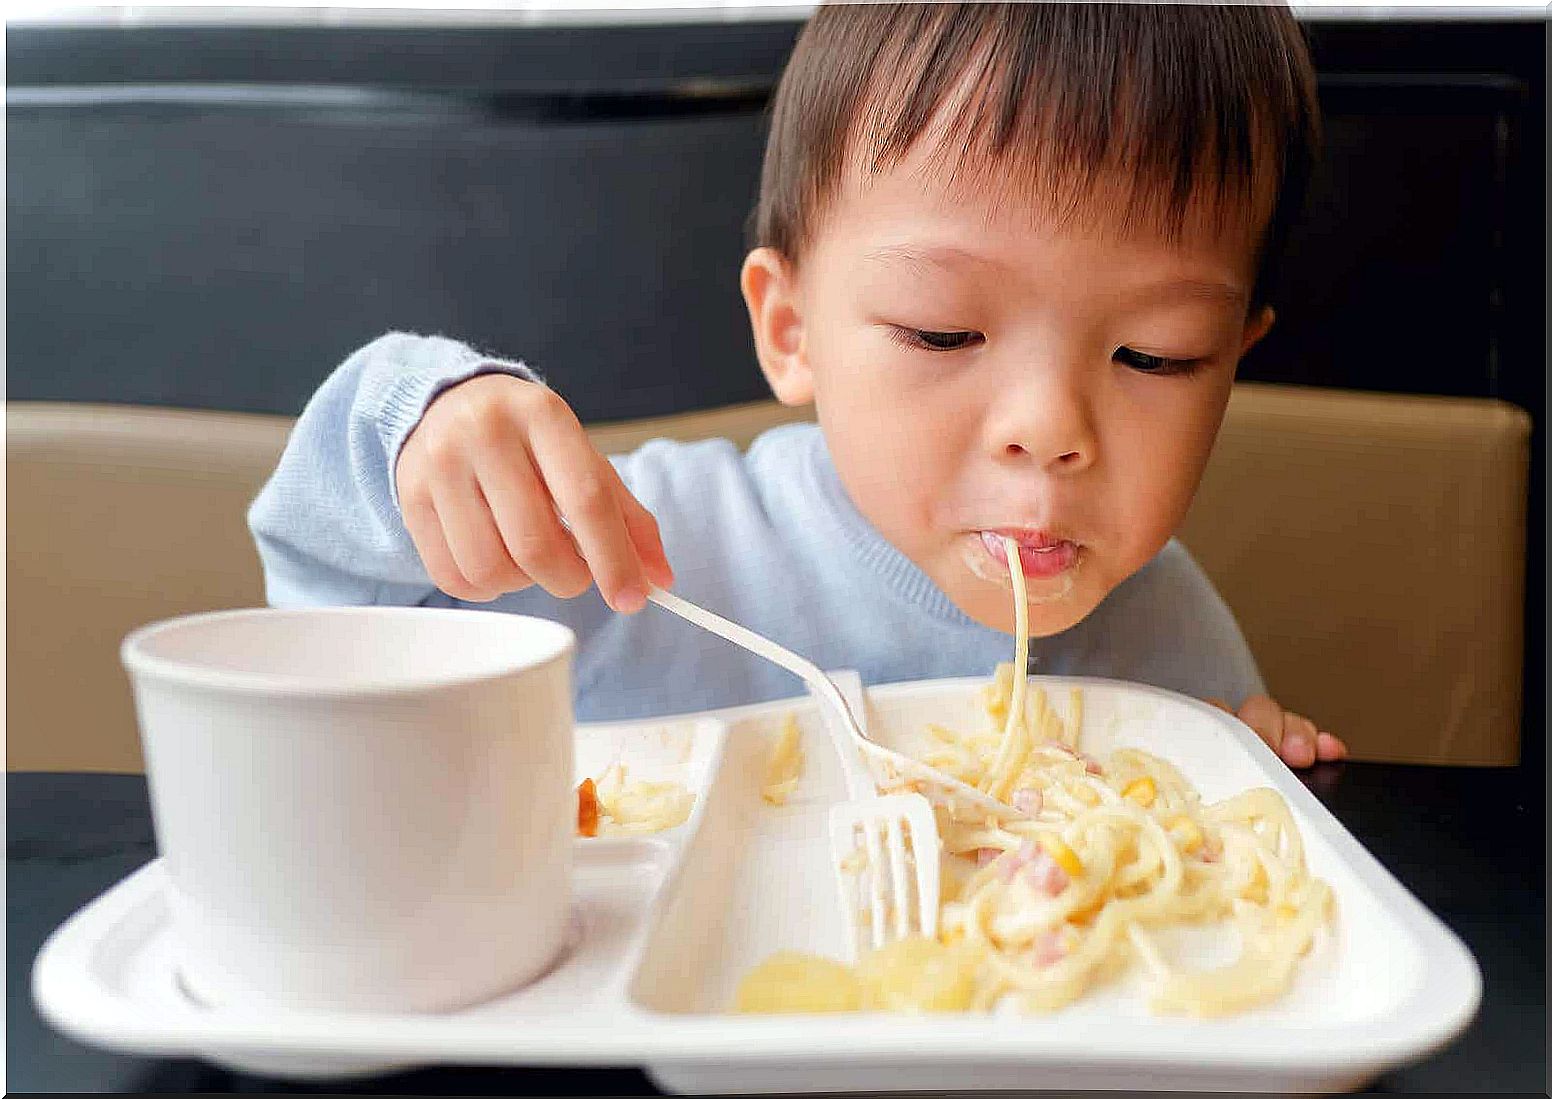 A toddler eating pasta.